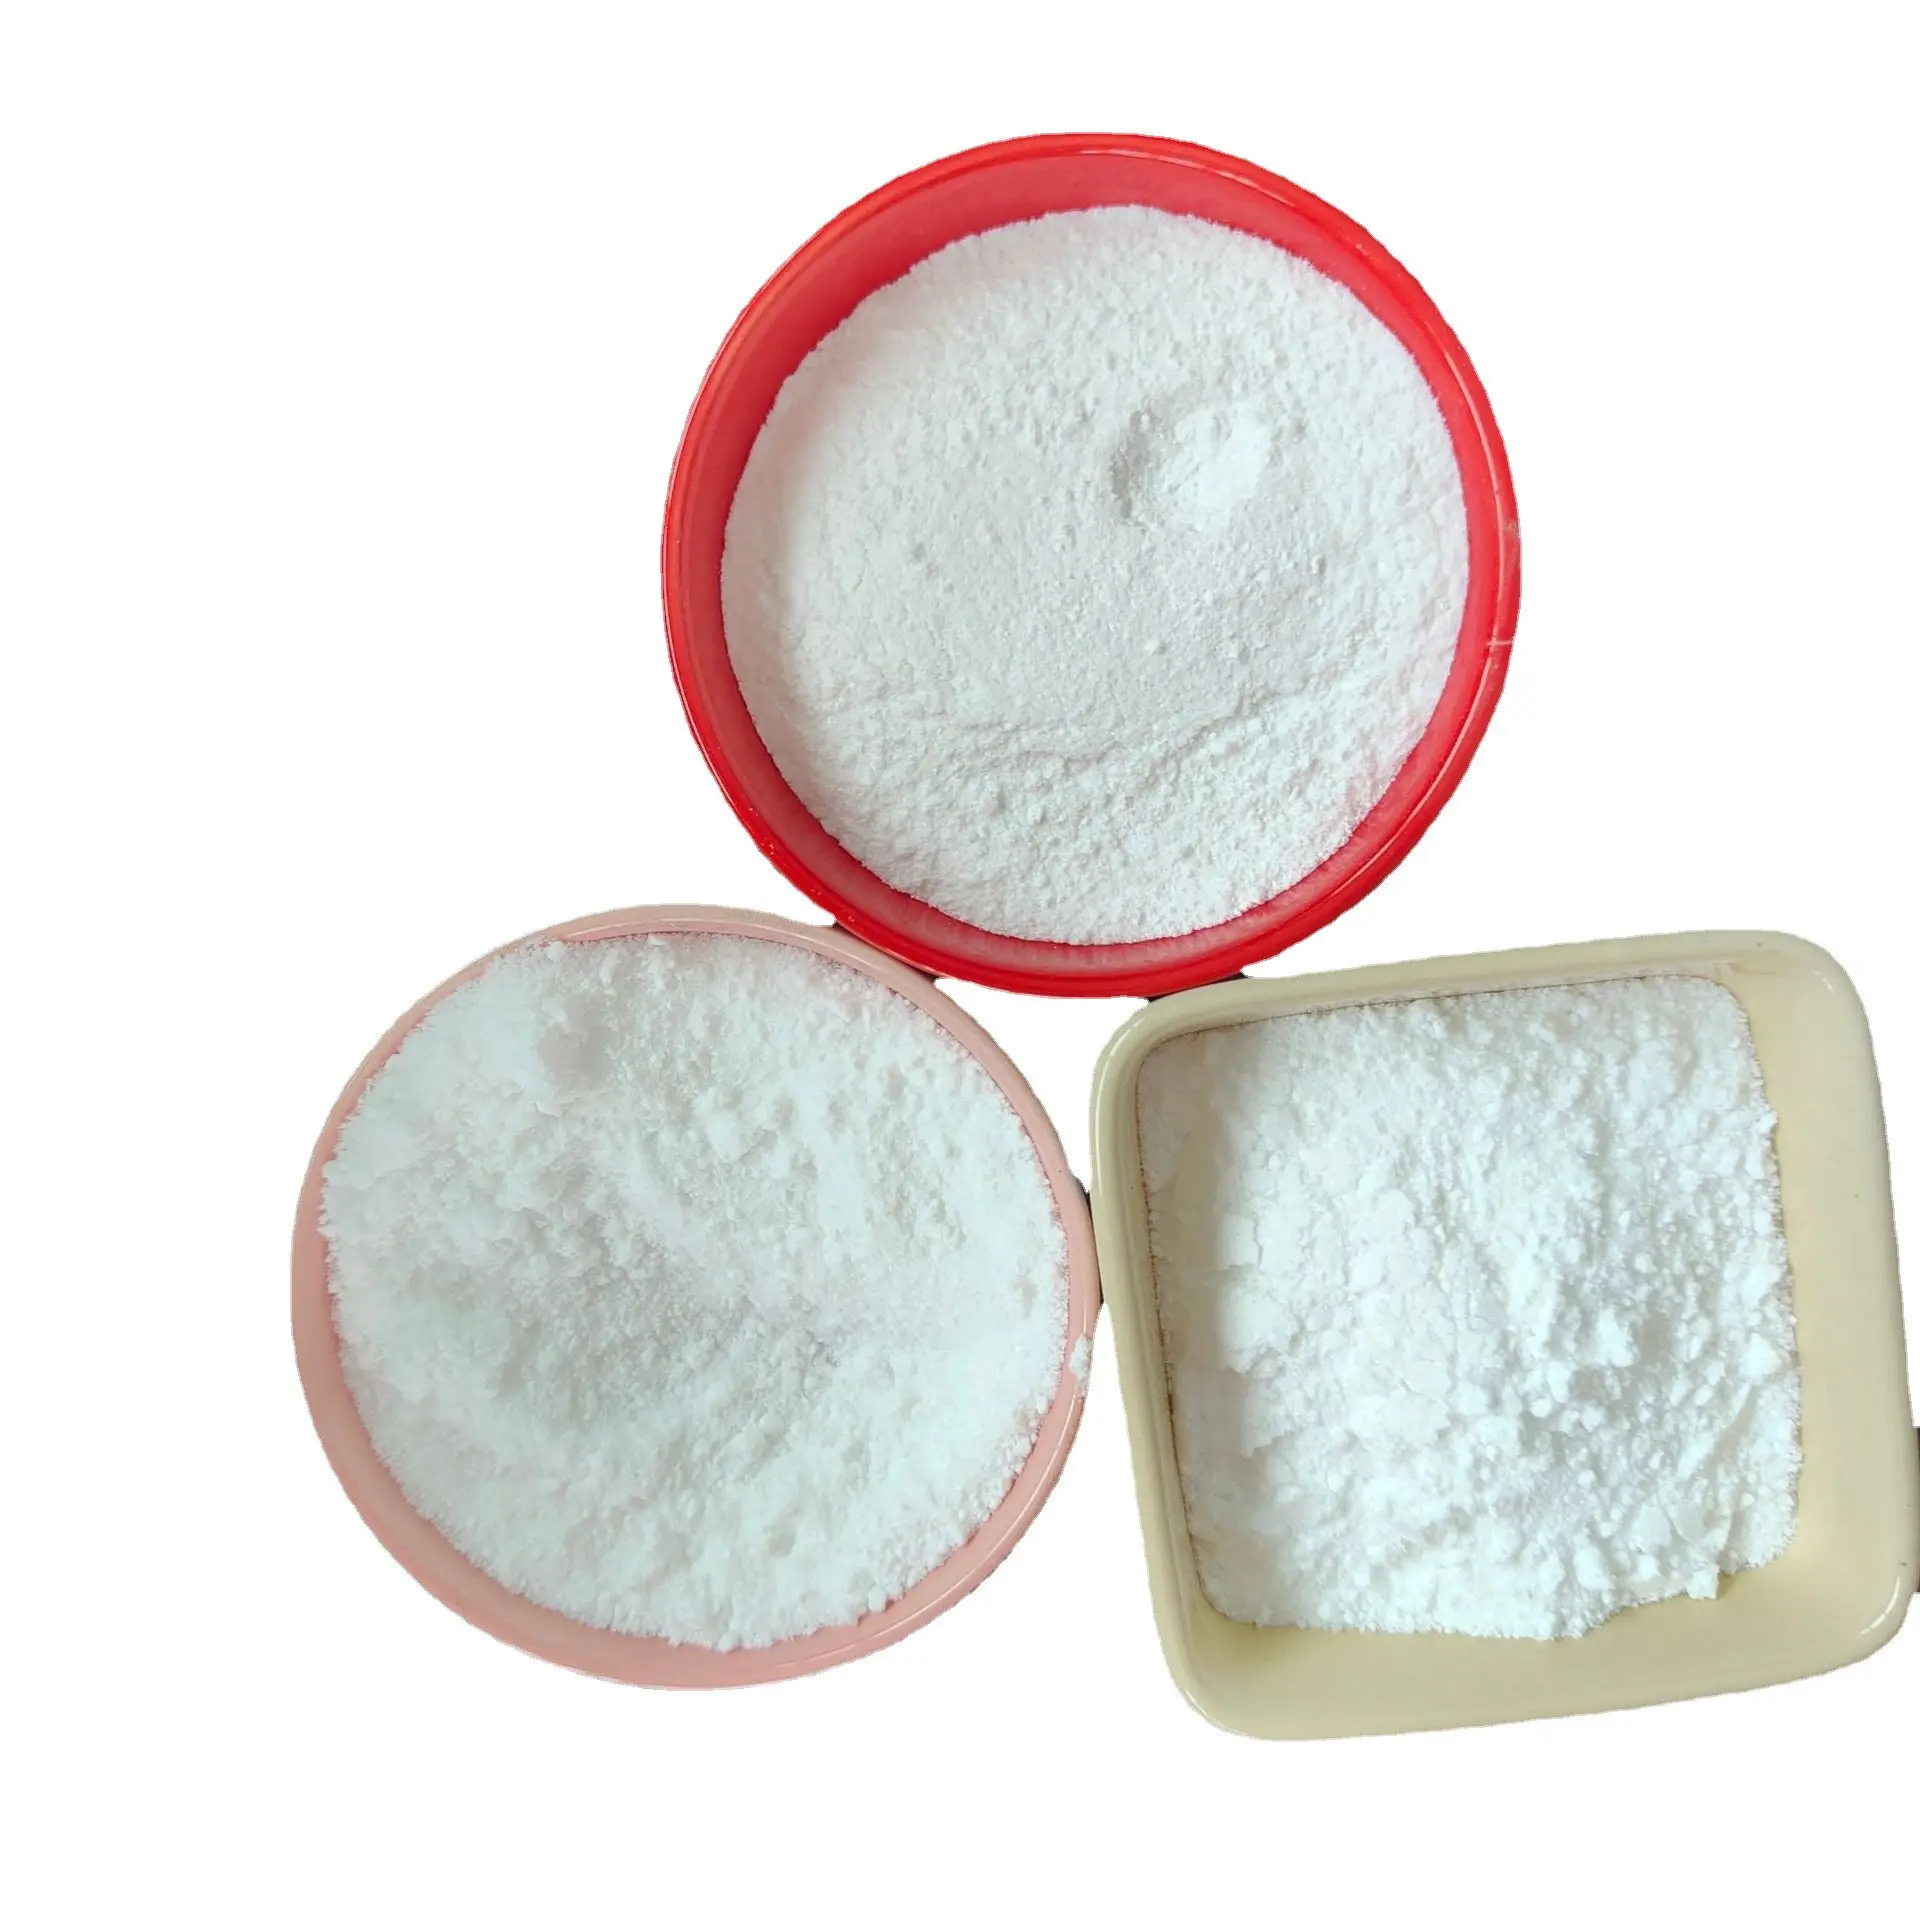 Wholesale Cheap Price Industrial Grade White Precipitated Silica Sand Powder